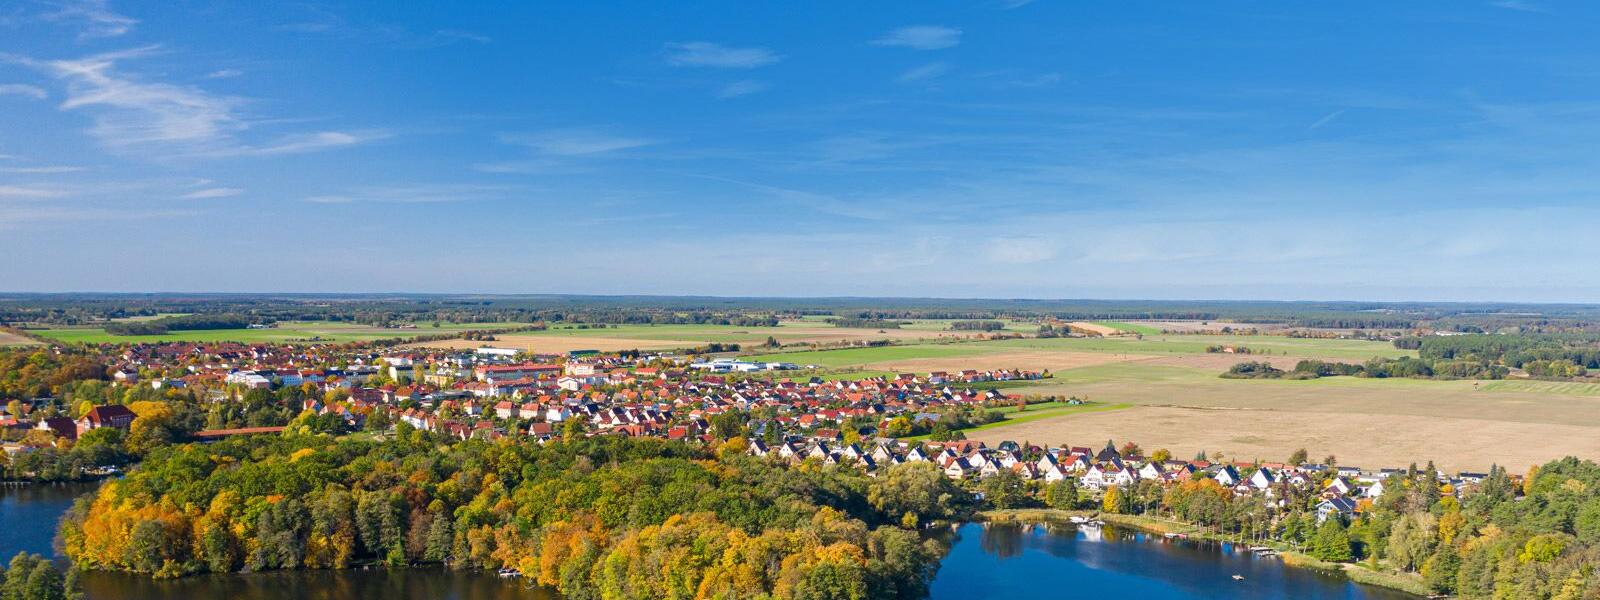 Ferienwohnungen und Ferienhäuser in Uckermark und Barnim - e-domizil